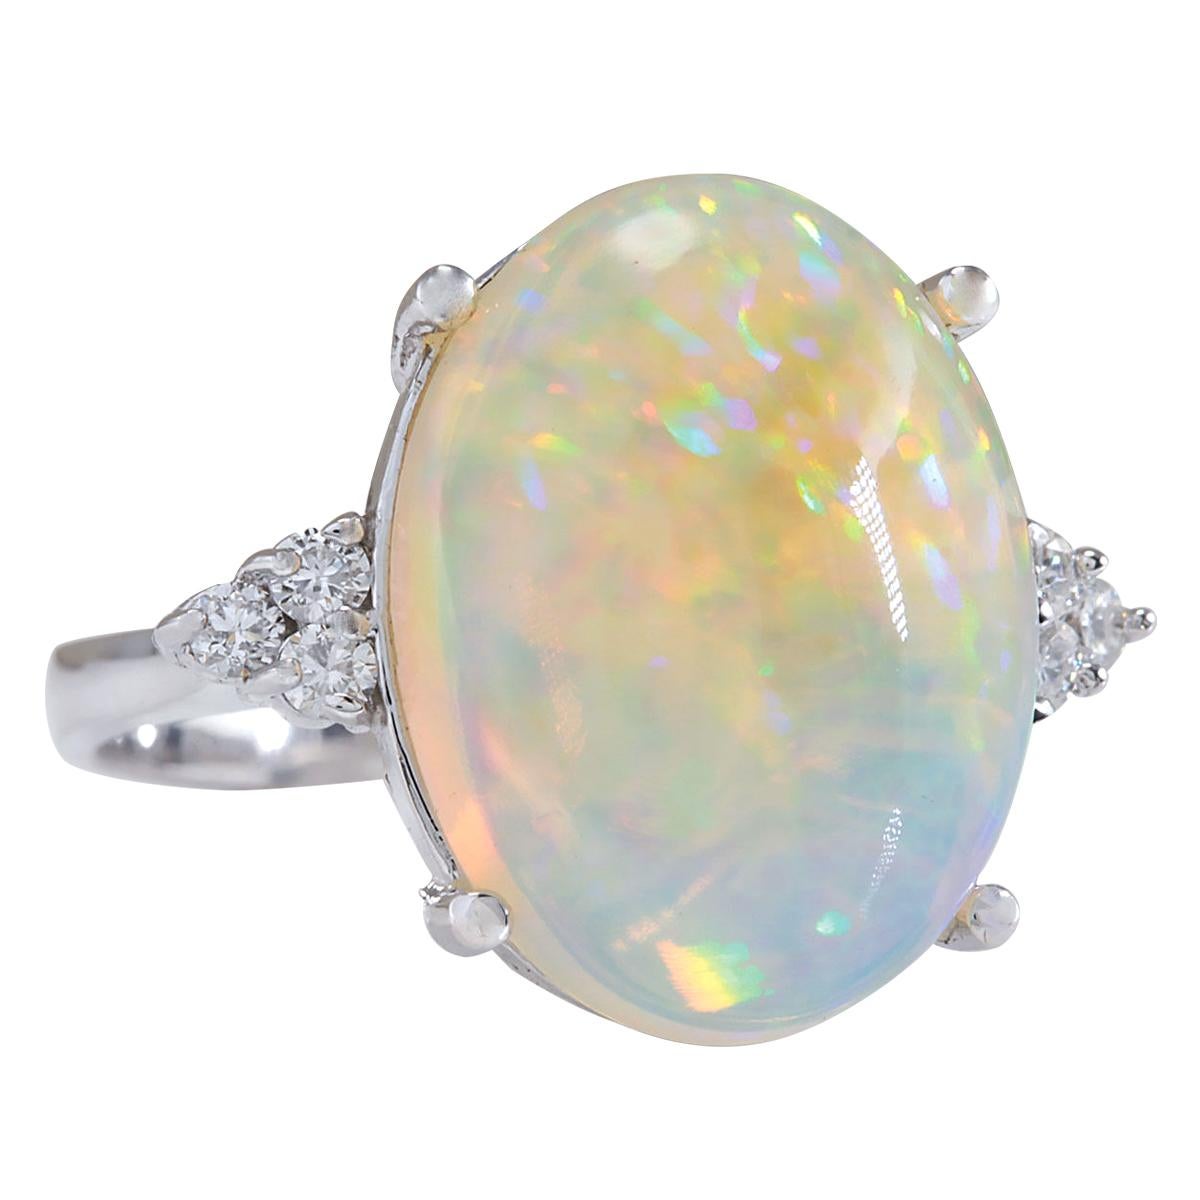 9.37 Carat Natural Opal 14 Karat White Gold Diamond Ring
Stamped: 14K White Gold
Total Ring Weight: 7.8 Grams
Total Natural Opal Weight is 9.02 Carat (Measures: 18.00x13.00 mm)
Color: Multicolor
Total Natural Diamond Weight is 0.35 Carat
Color: F-G,